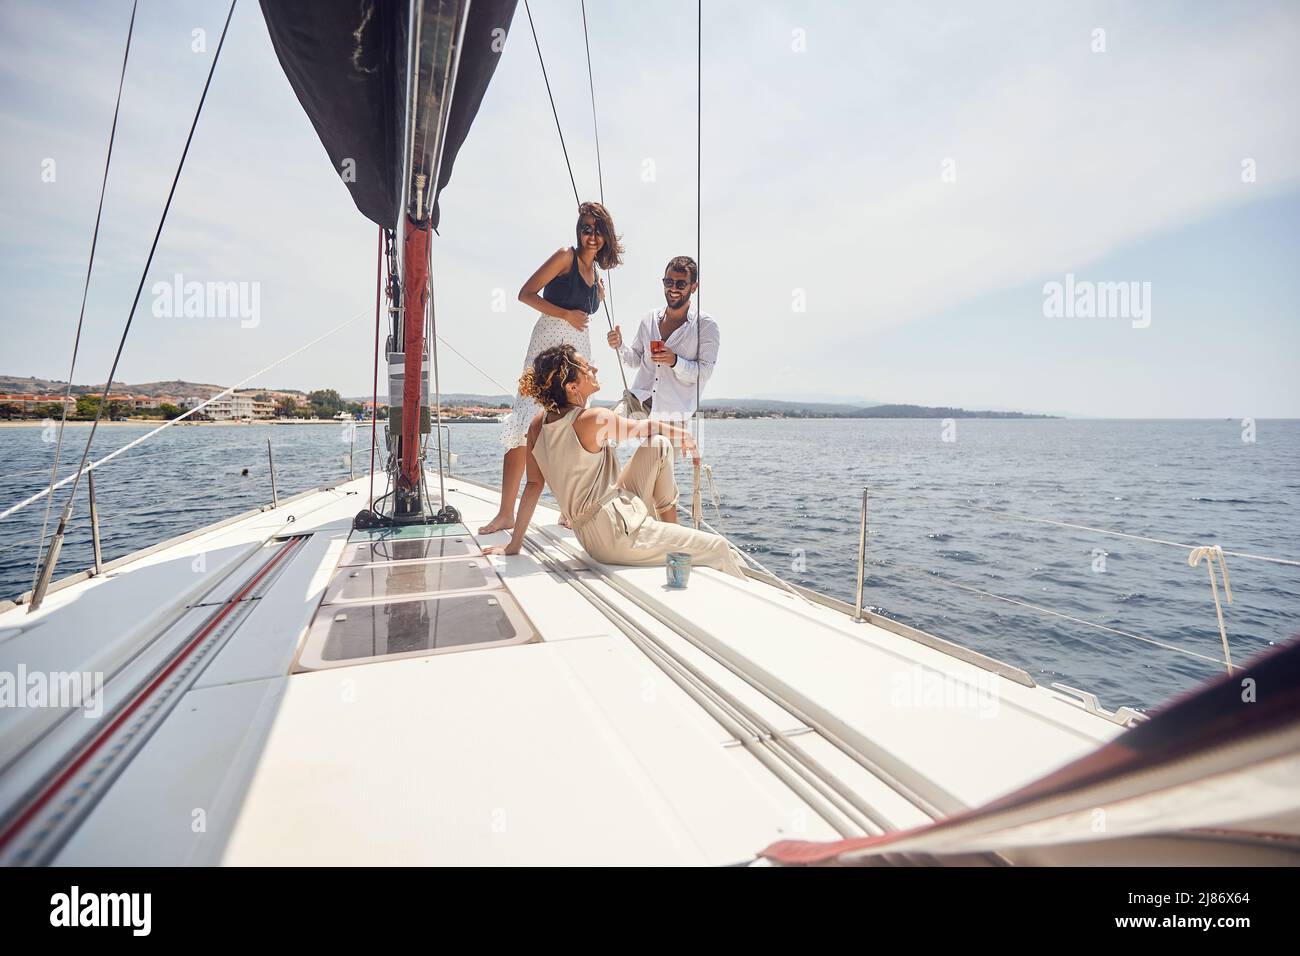 Un gruppo di giovani modelli belli sta godendo il sole ed il vento mentre sta posando per una foto sul ponte dello yacht in una bella giornata estiva il th Foto Stock